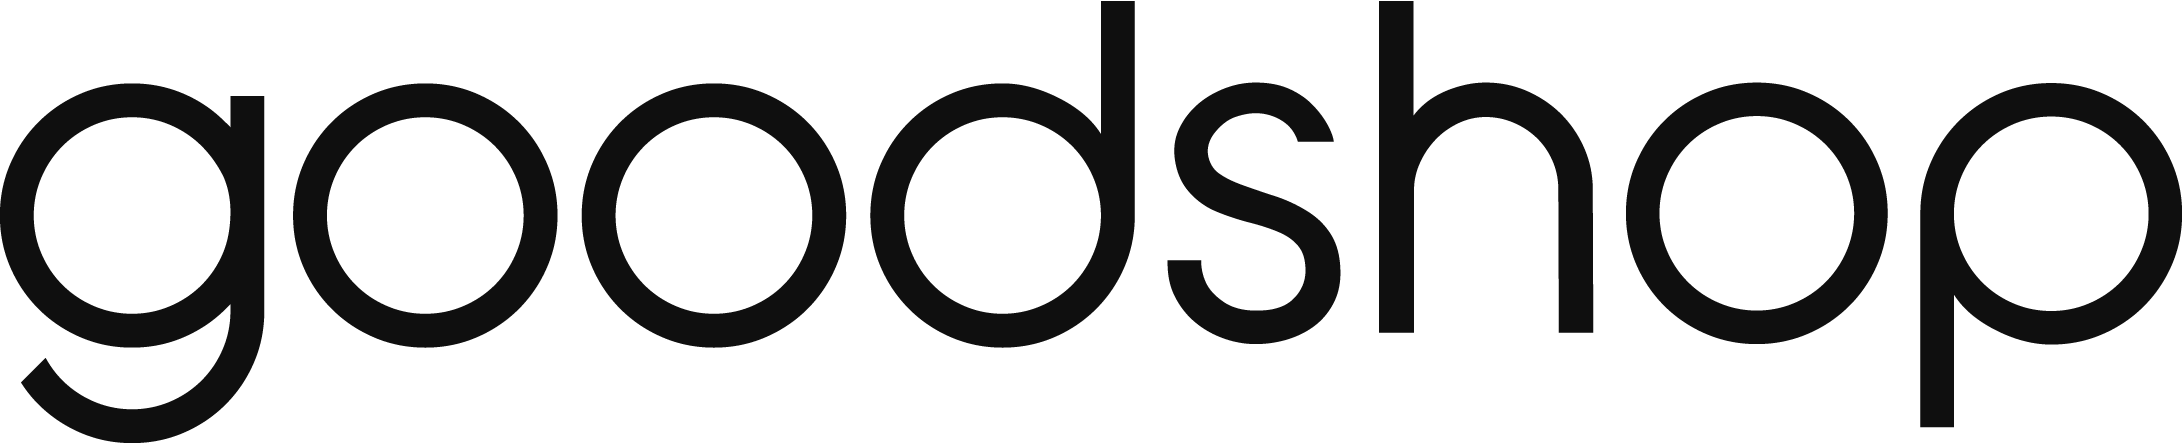 Goodshop Logo